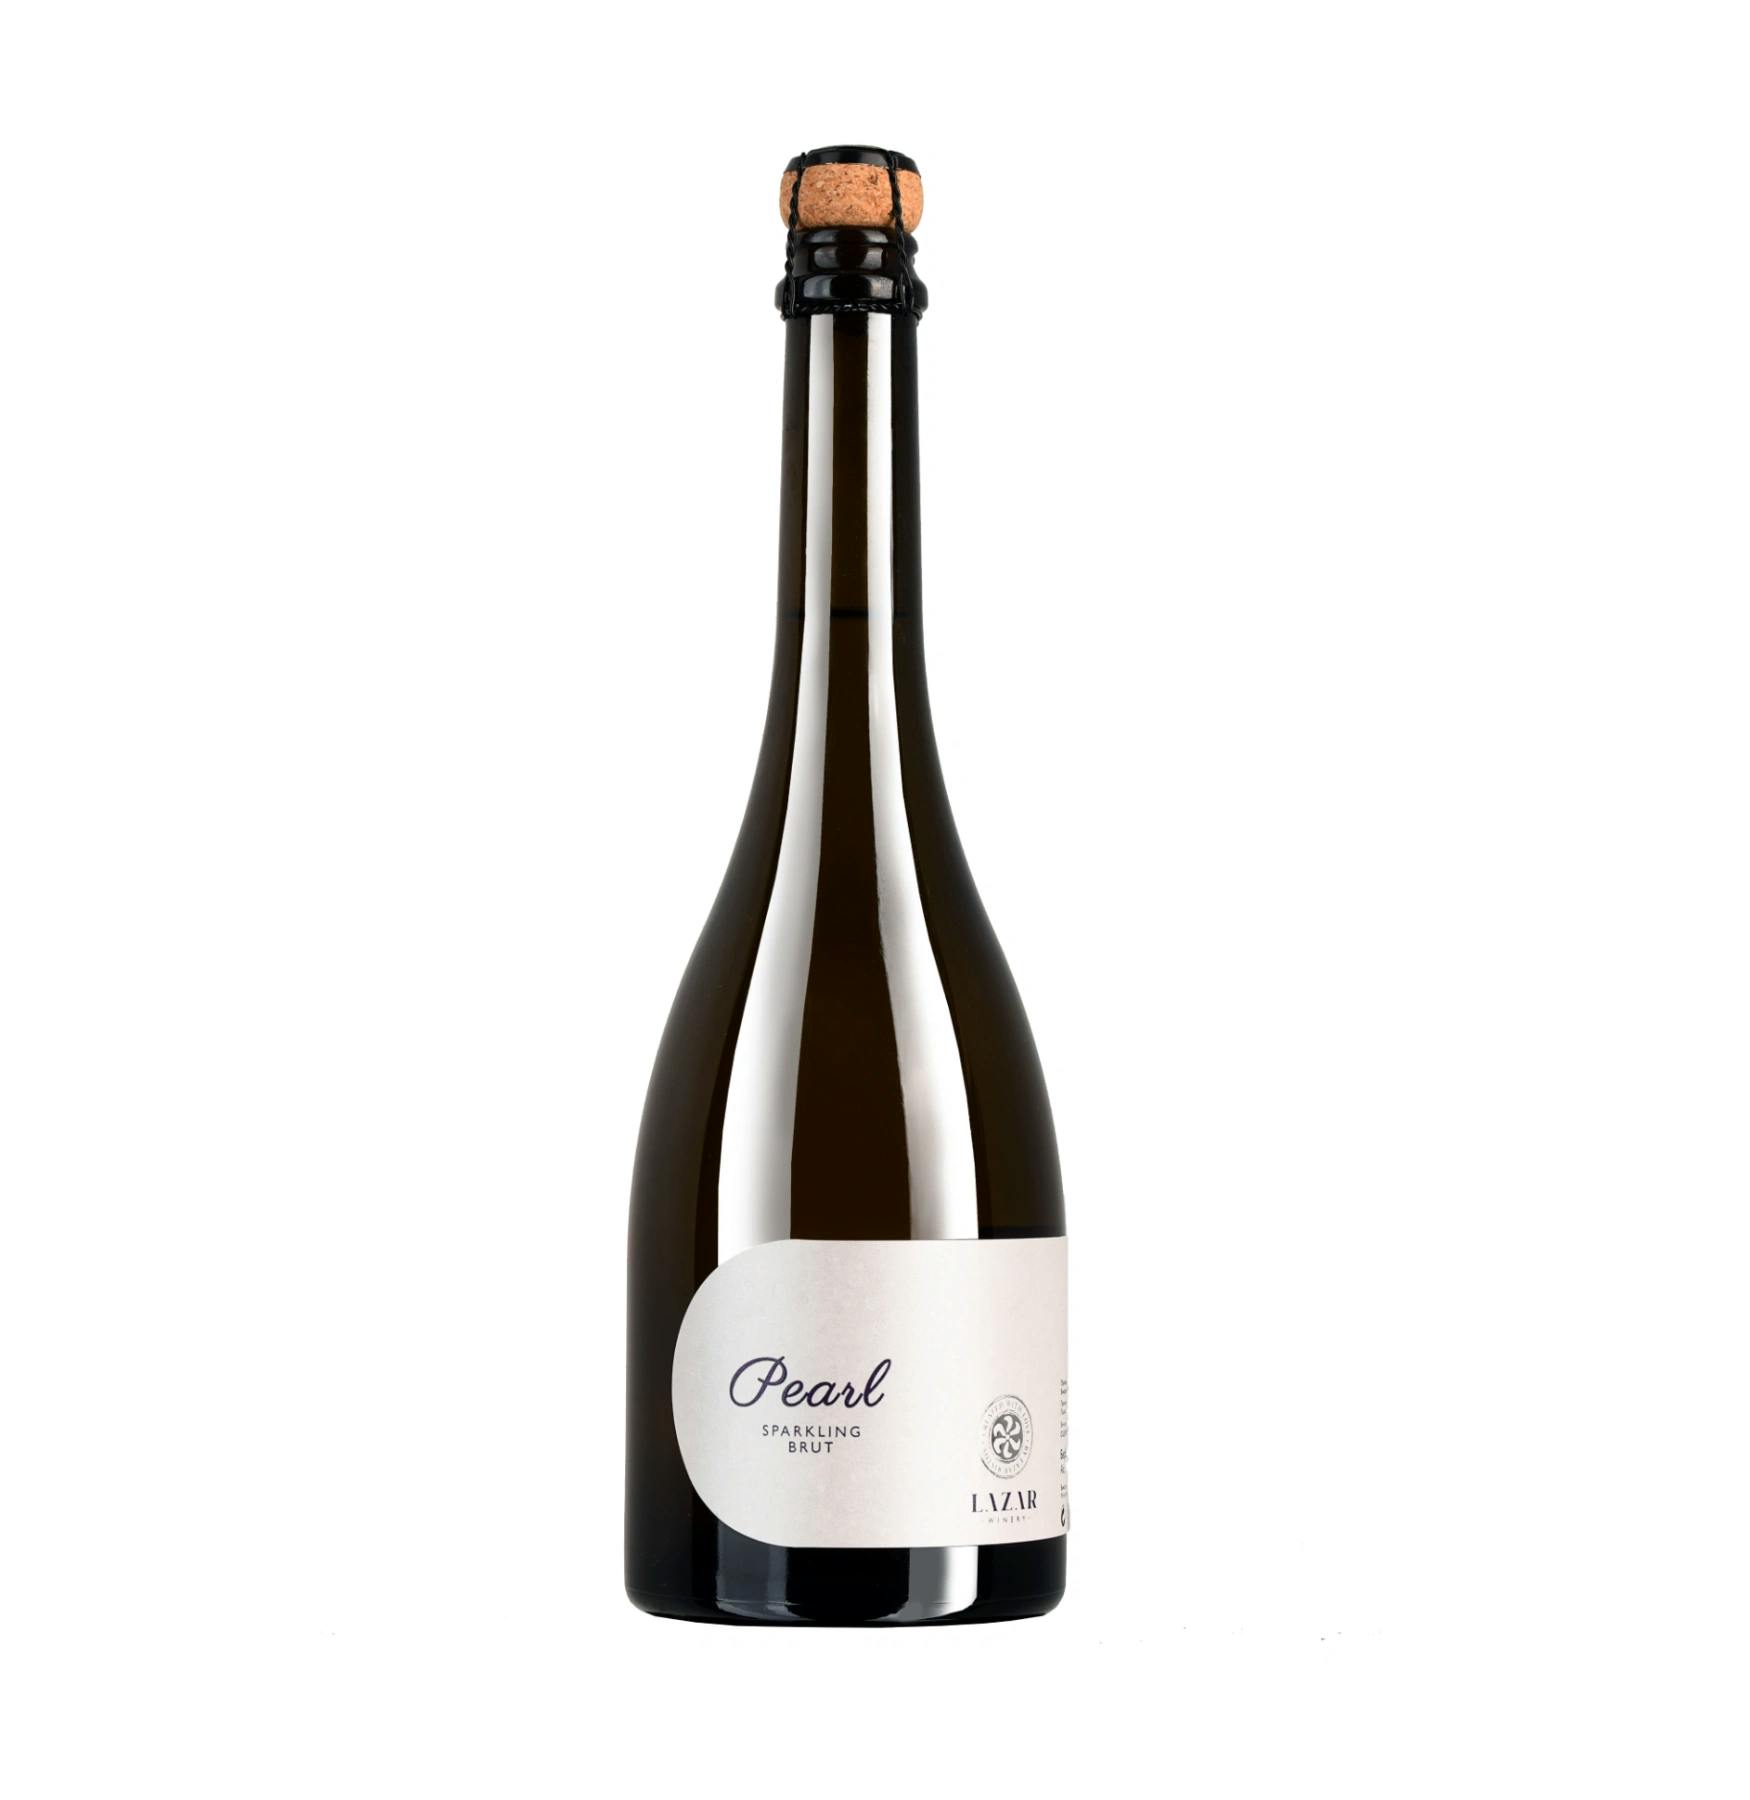 Lazar Pearl Sparkling Brut 0,75 l - Penušavo belo vino